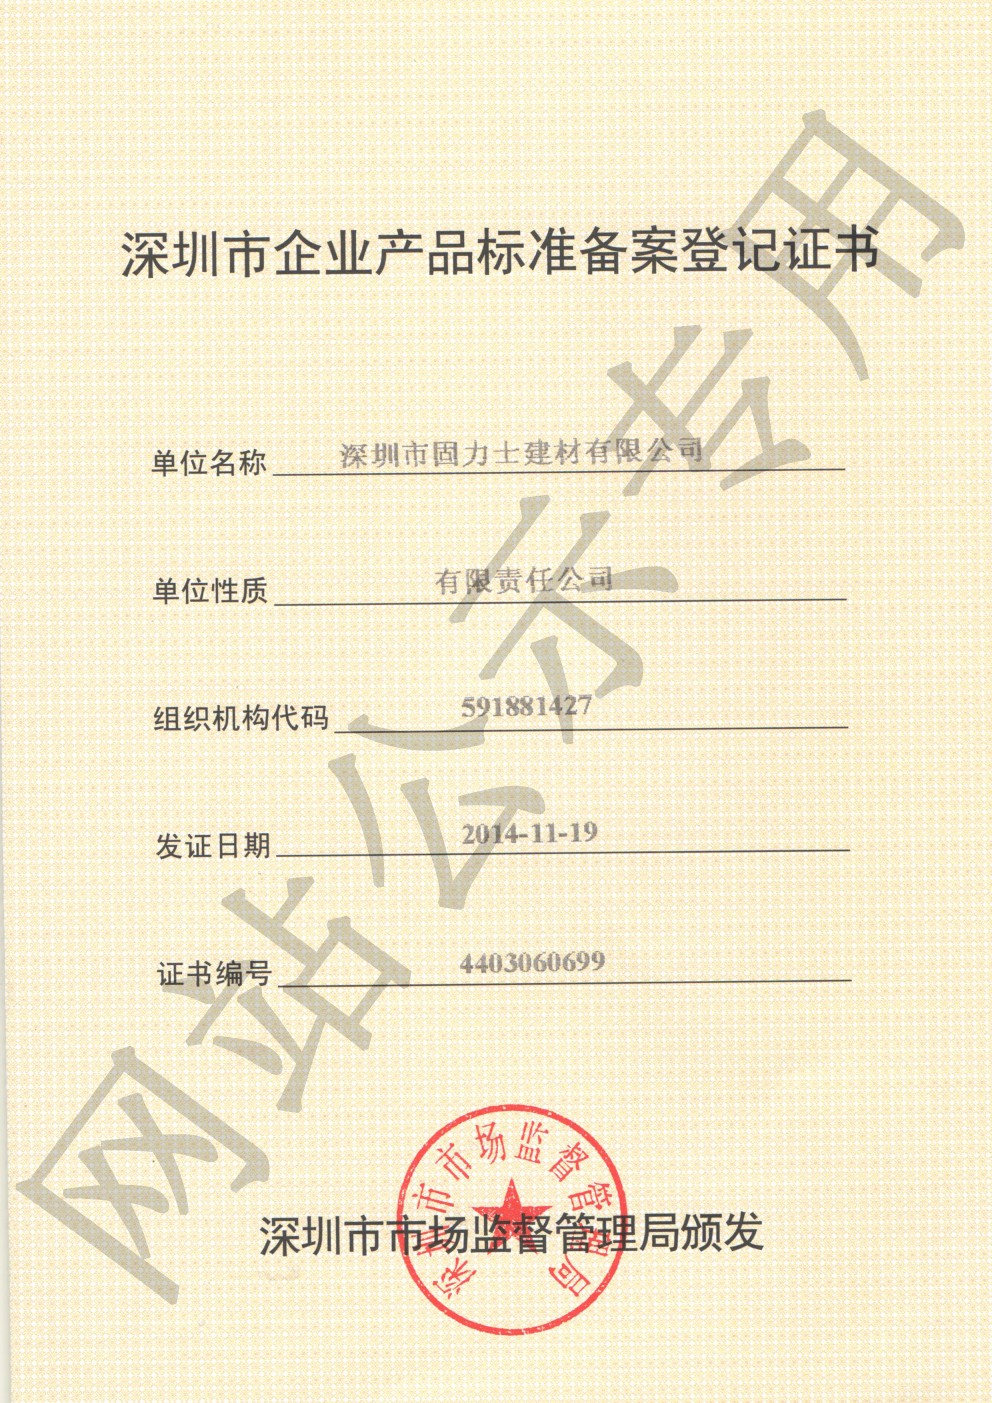 梨树企业产品标准登记证书